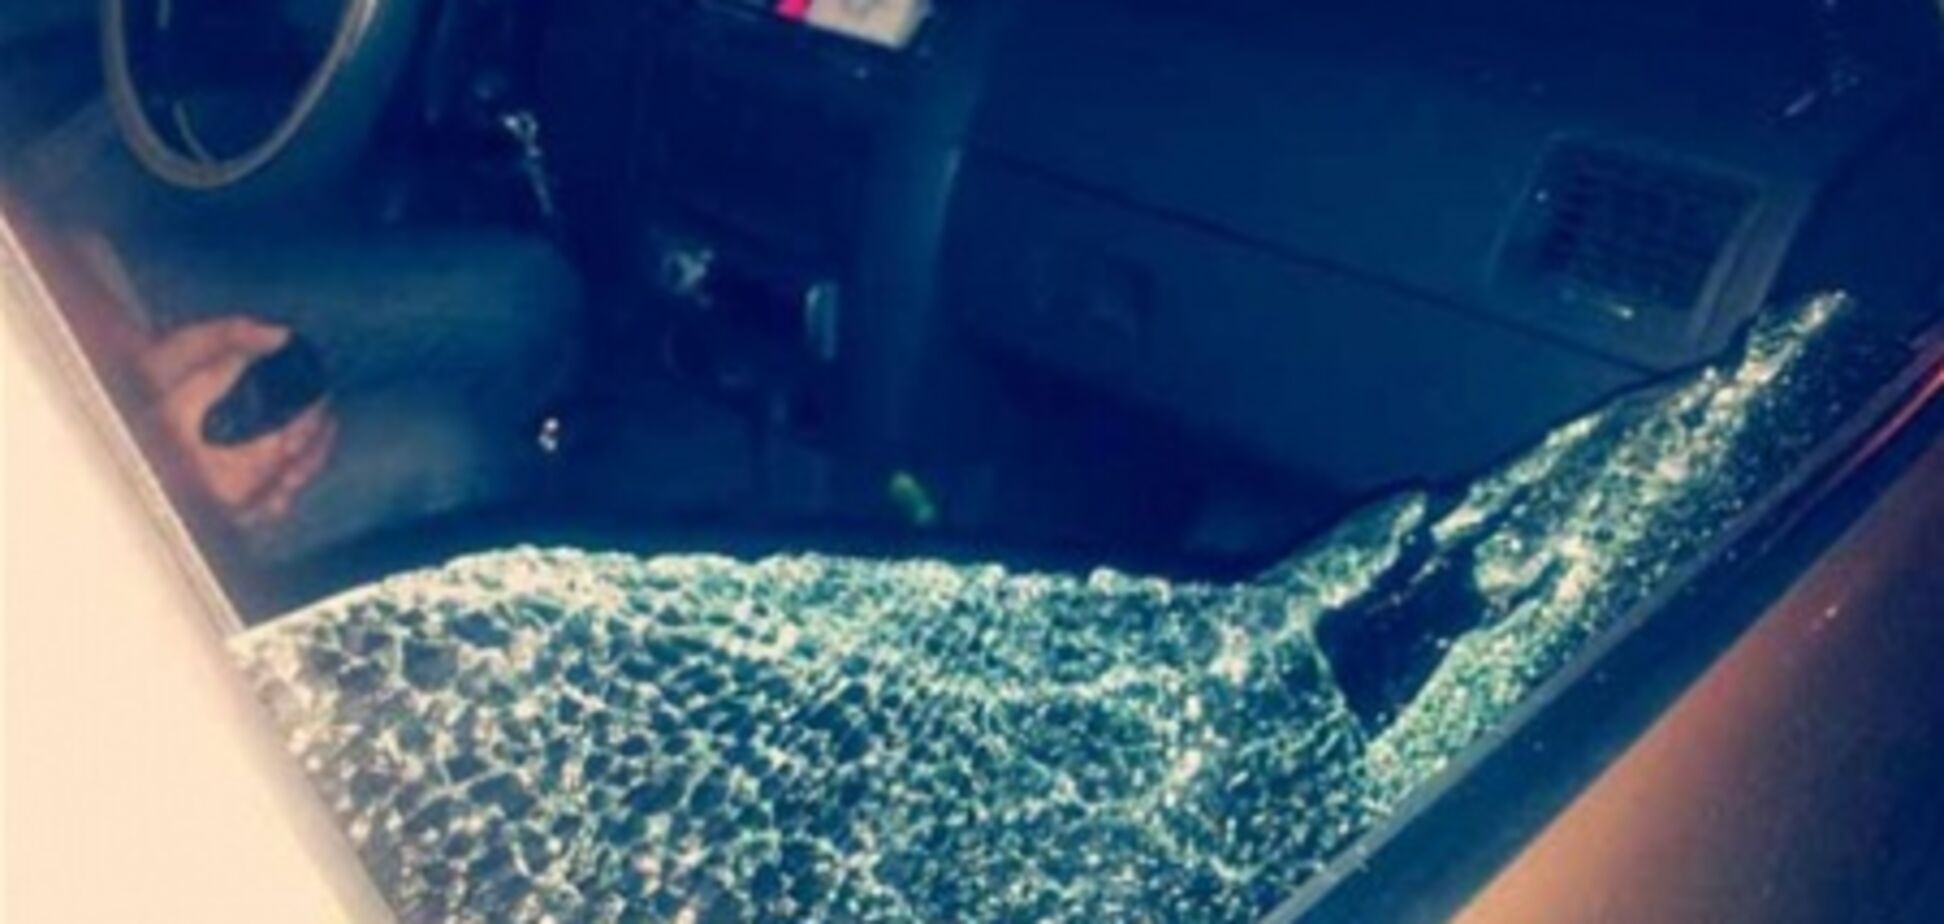 На машину 'Надзвичайних новин' напал неизвестный с саперной лопатой. Фото